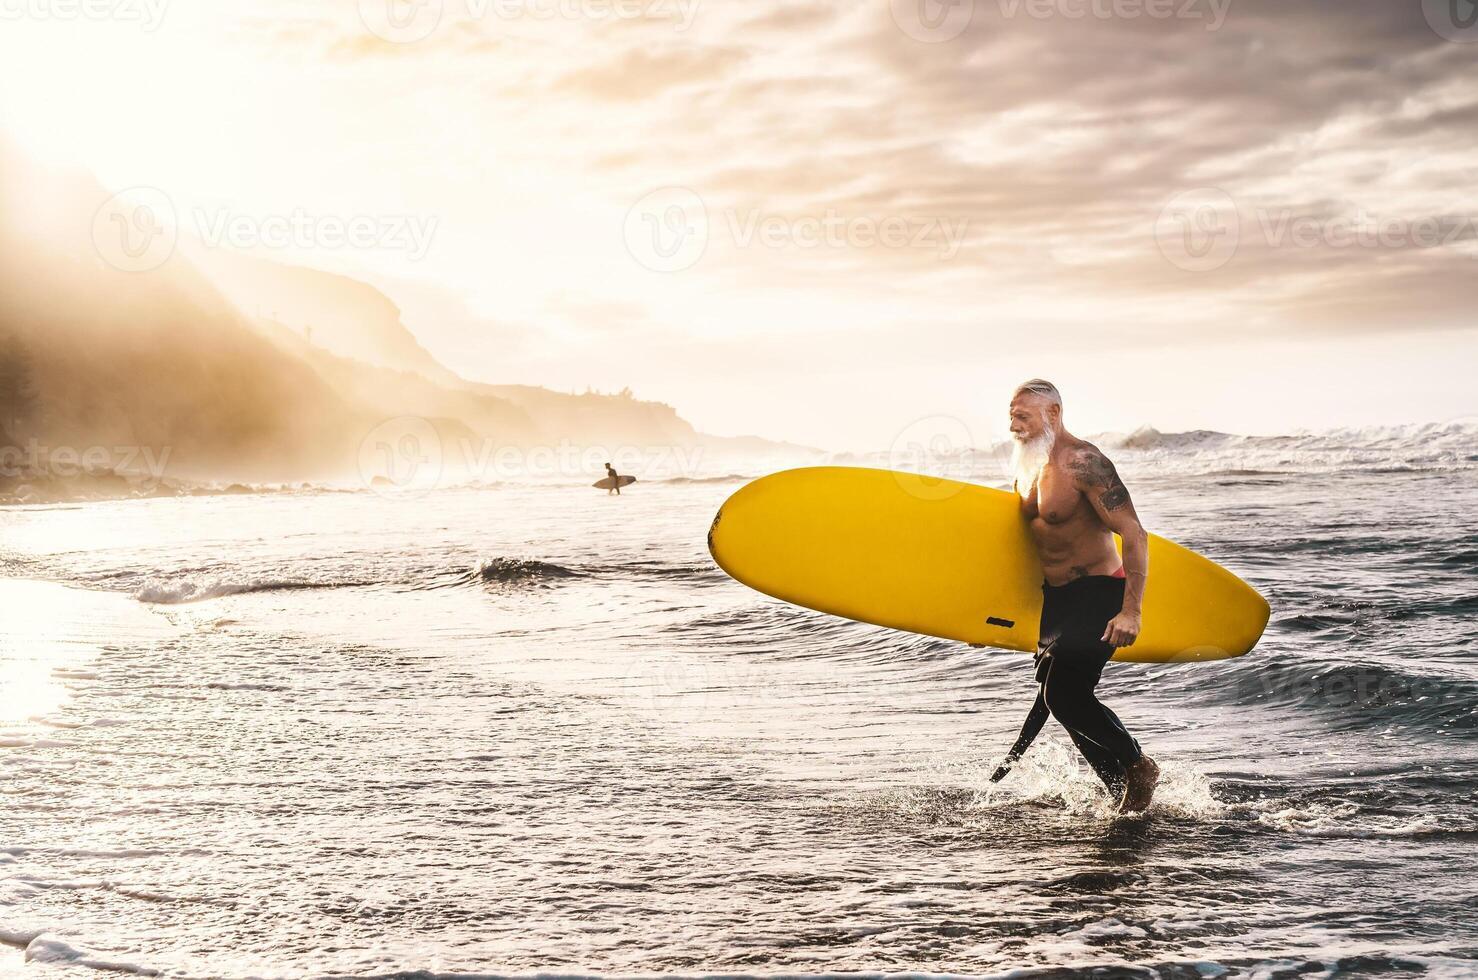 gelukkig fit senior surfing Aan zonsondergang tijd - sportief volwassen Mens hebben pret opleiding met surfboard in oceaan - ouderen gezond mensen levensstijl en extreem sport concept foto